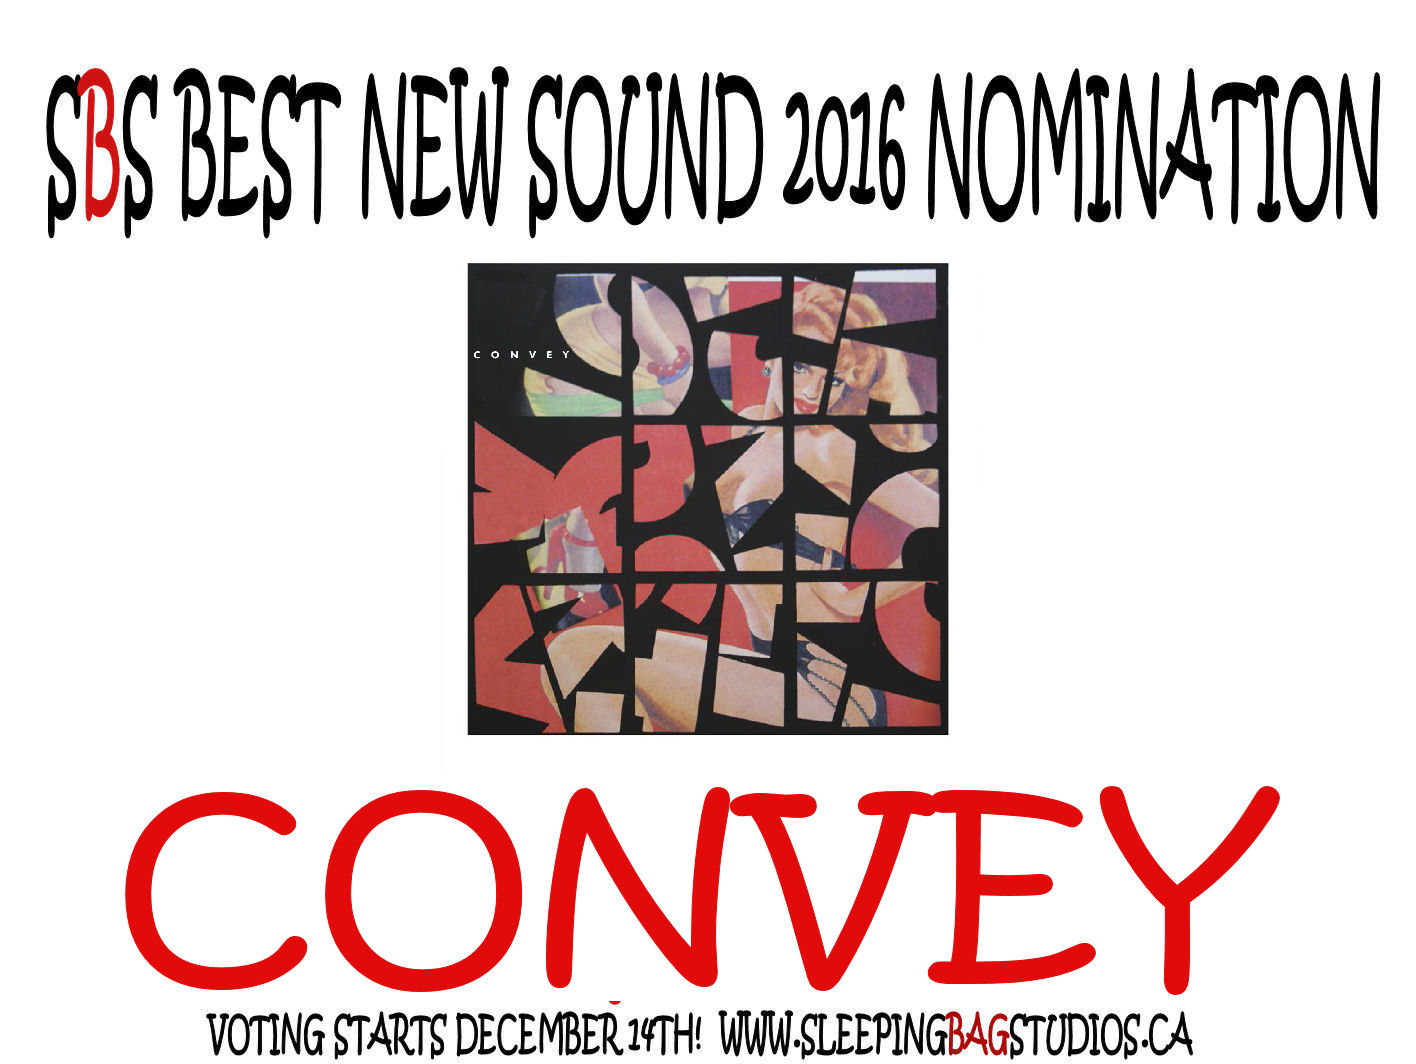  Best New Sound Nomination 2016:  Convey